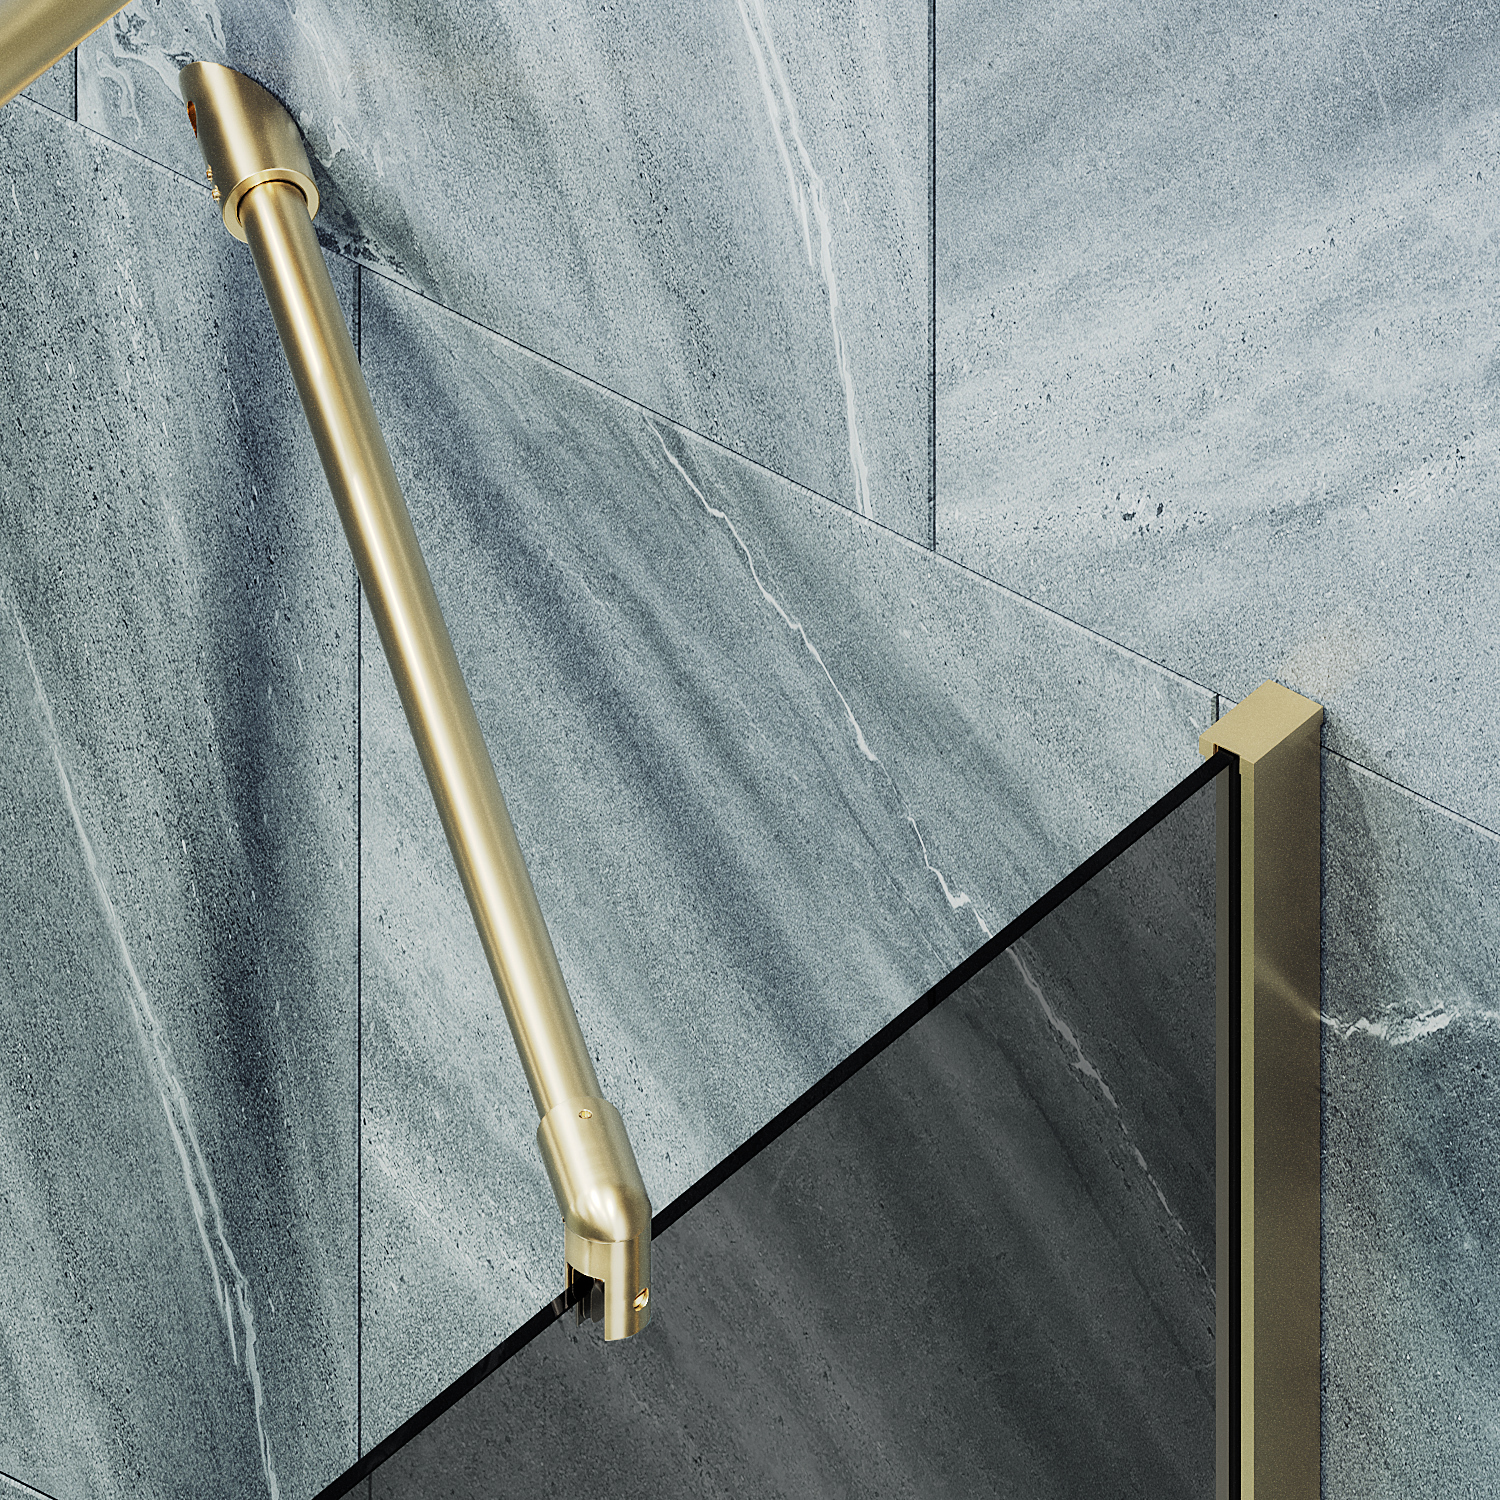 Шторка для ванны MaybahGlass 90х140 MGV-83-3ш стекло графит, профиль золото - фото 3